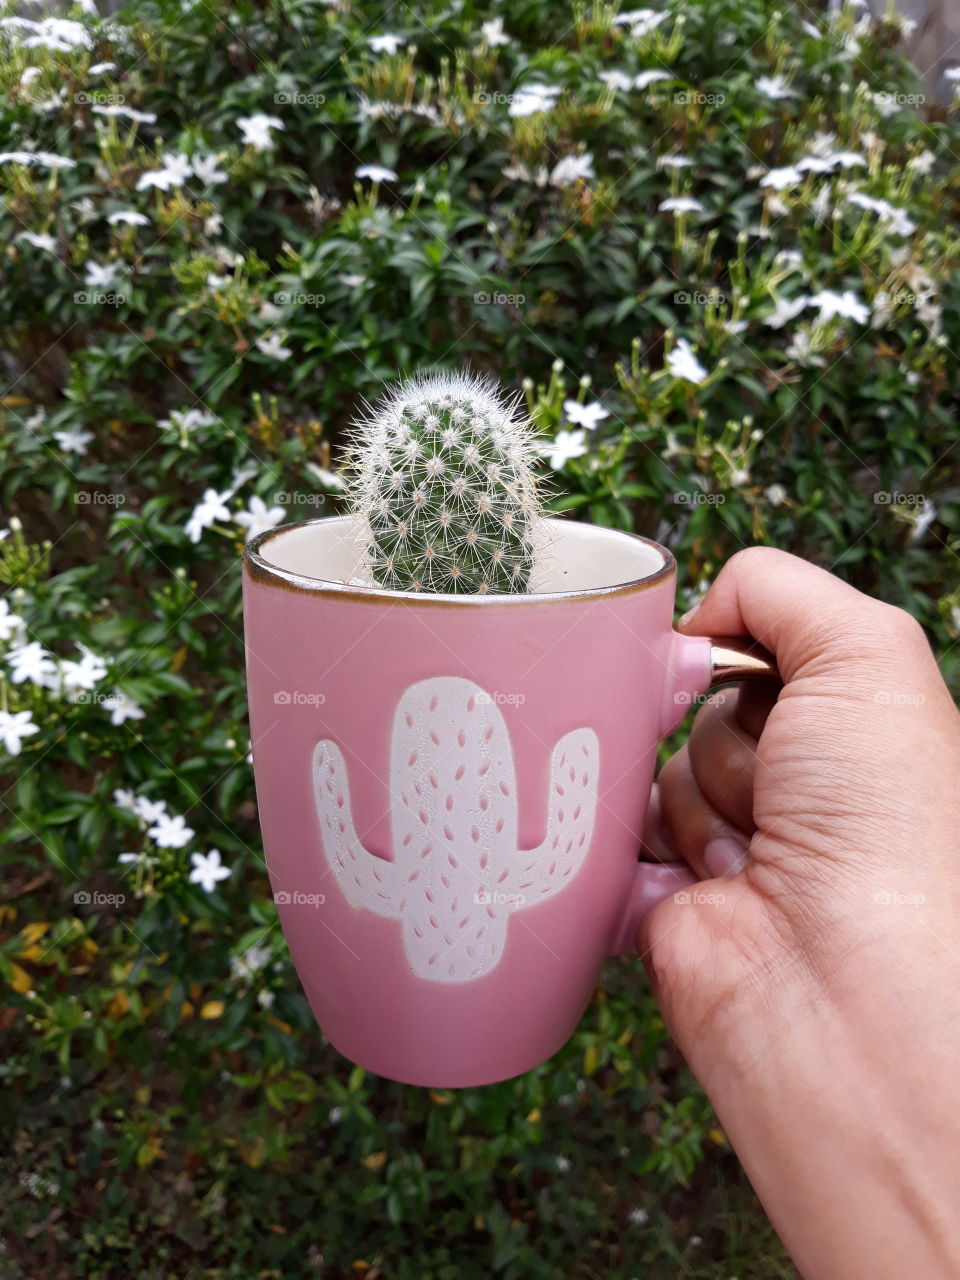 Cactus in a pink cactus mug. Cutie!